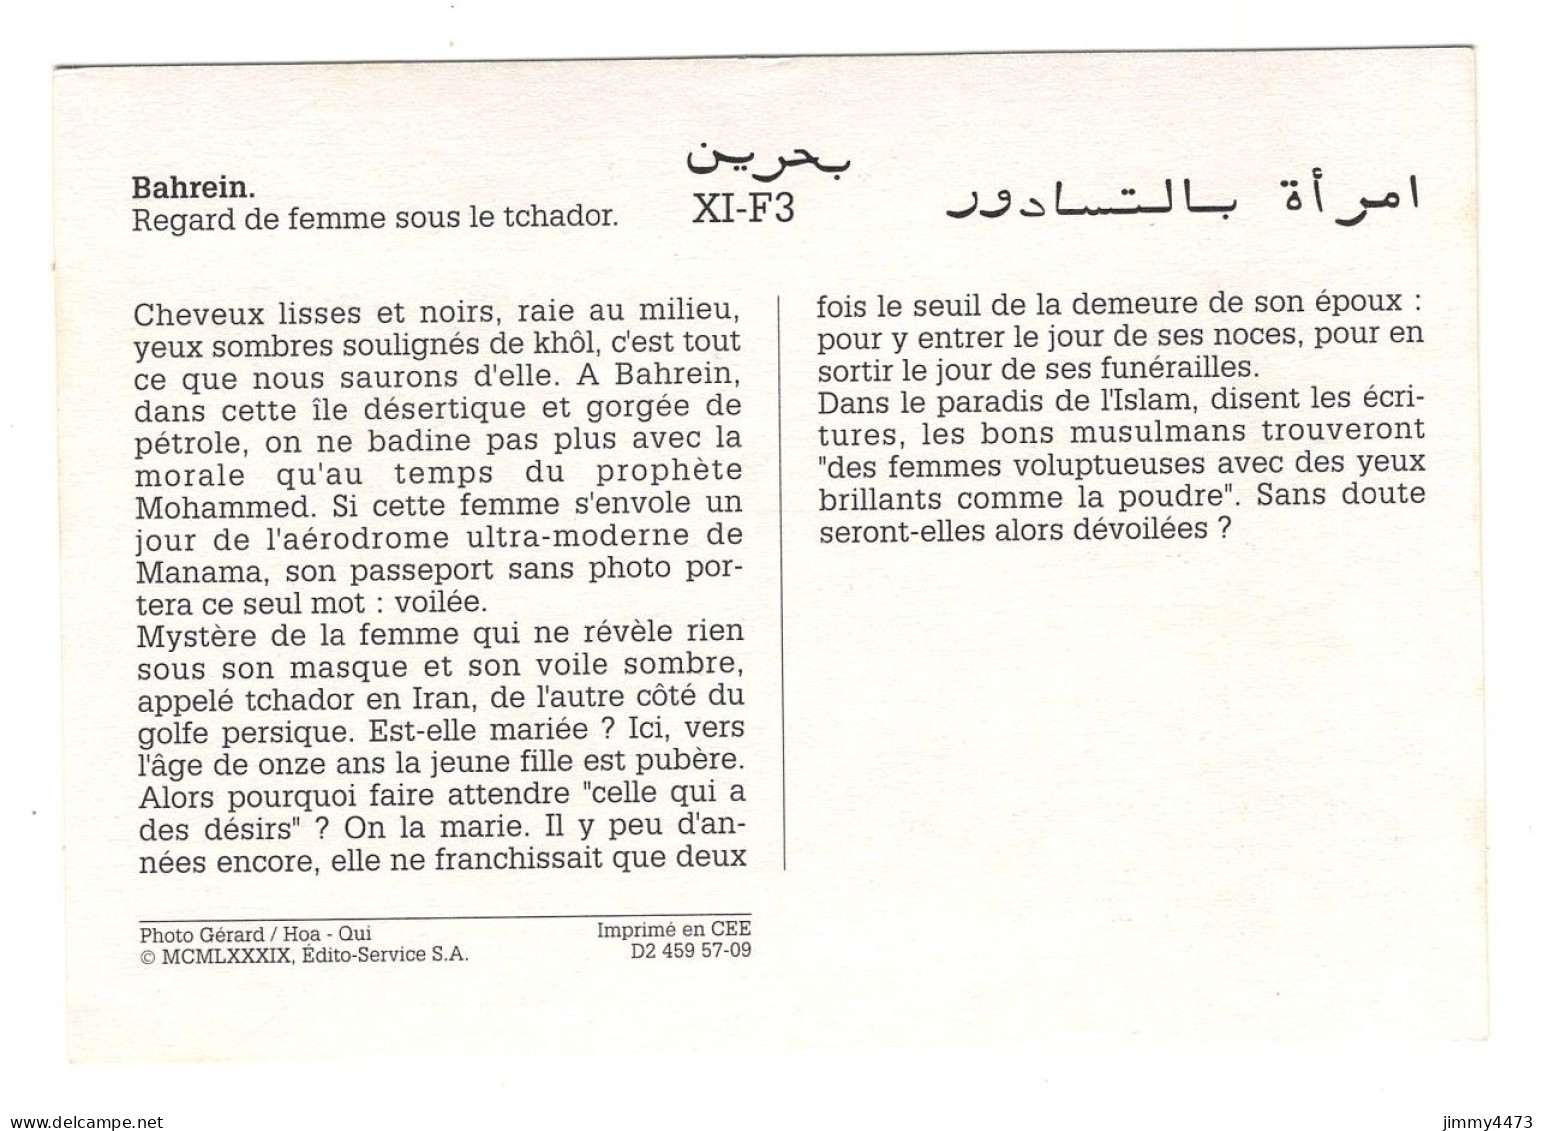 BAHREIN - Regard De Femme Sous Le Tchador ( Texte Au Dos ) XI-F3 - Photo Gérard / Hoa - Qui - Baharain